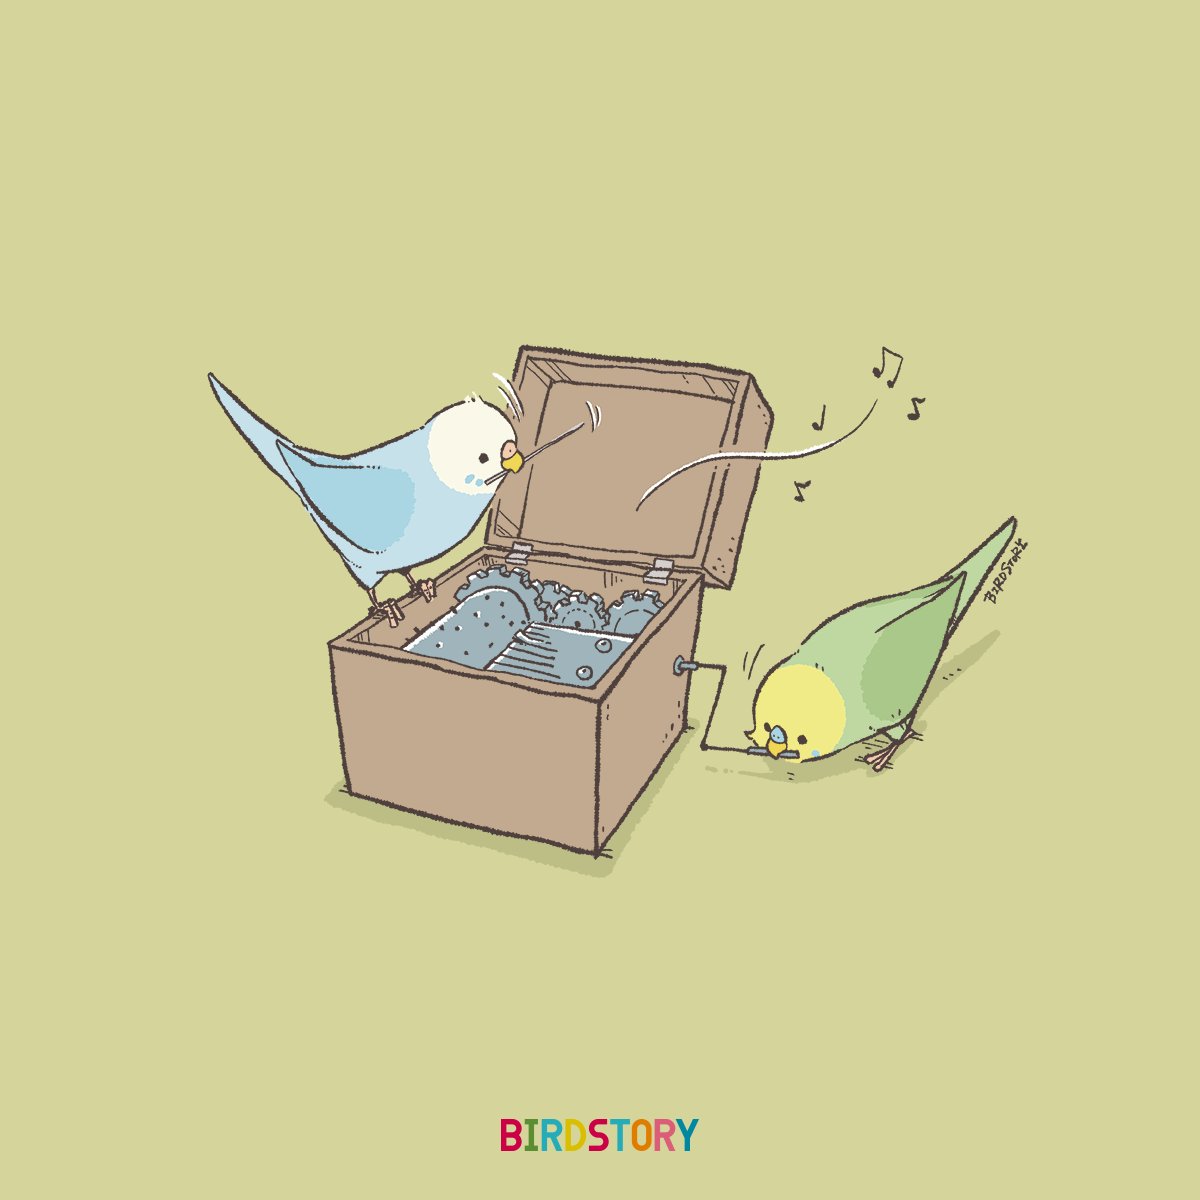 Twitter 上的 Birdstory おはようございます 本日は11月10日 いいおとの語呂合わせから いい音 オルゴールの日とのことです Birdstory オルゴール セキセイインコ T Co Ndoqogfdp3 Twitter